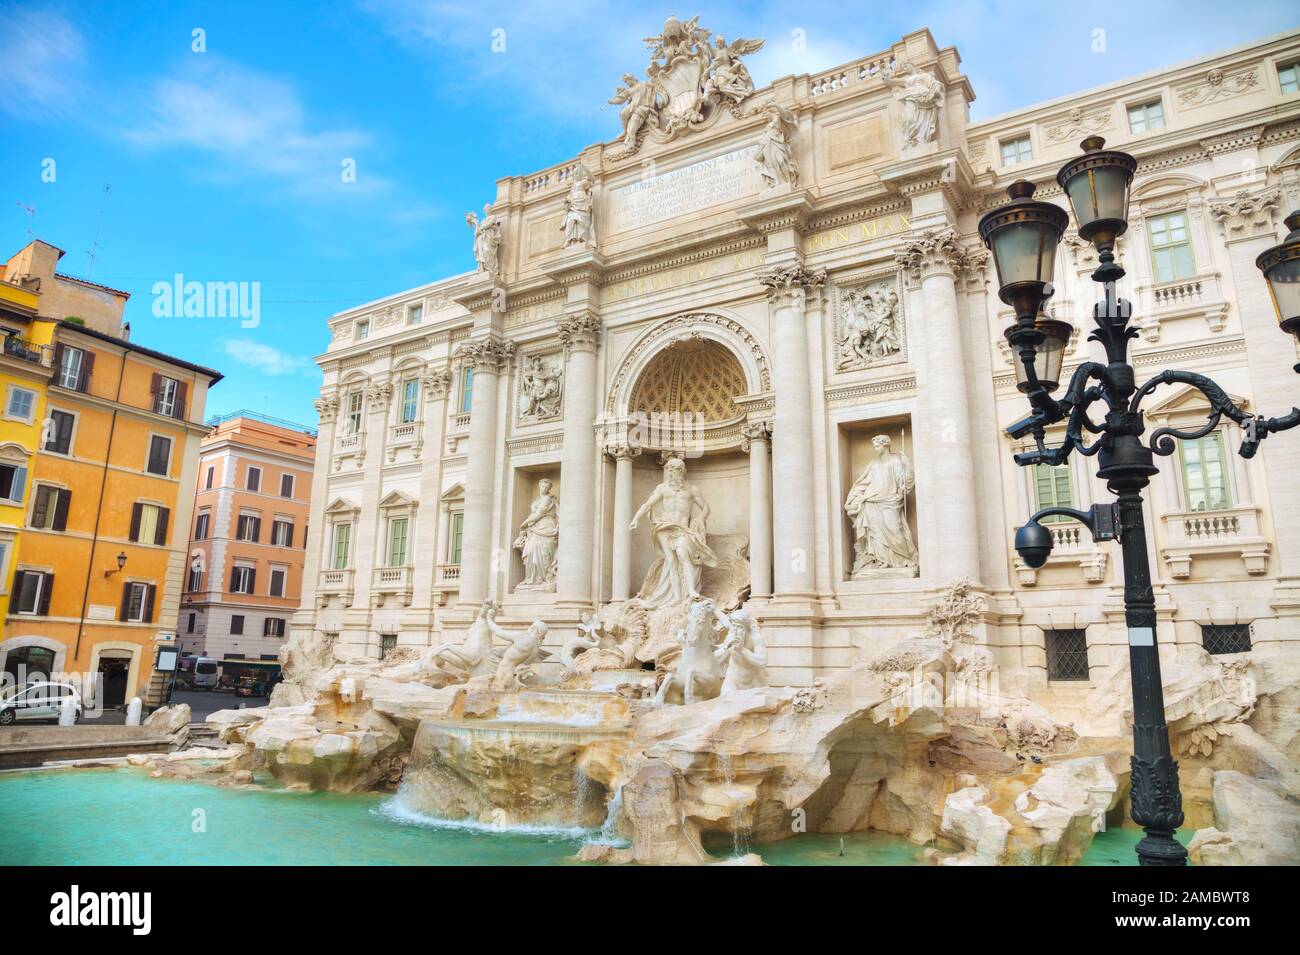 La célèbre fontaine de Trevi à Rome, en Italie Banque D'Images